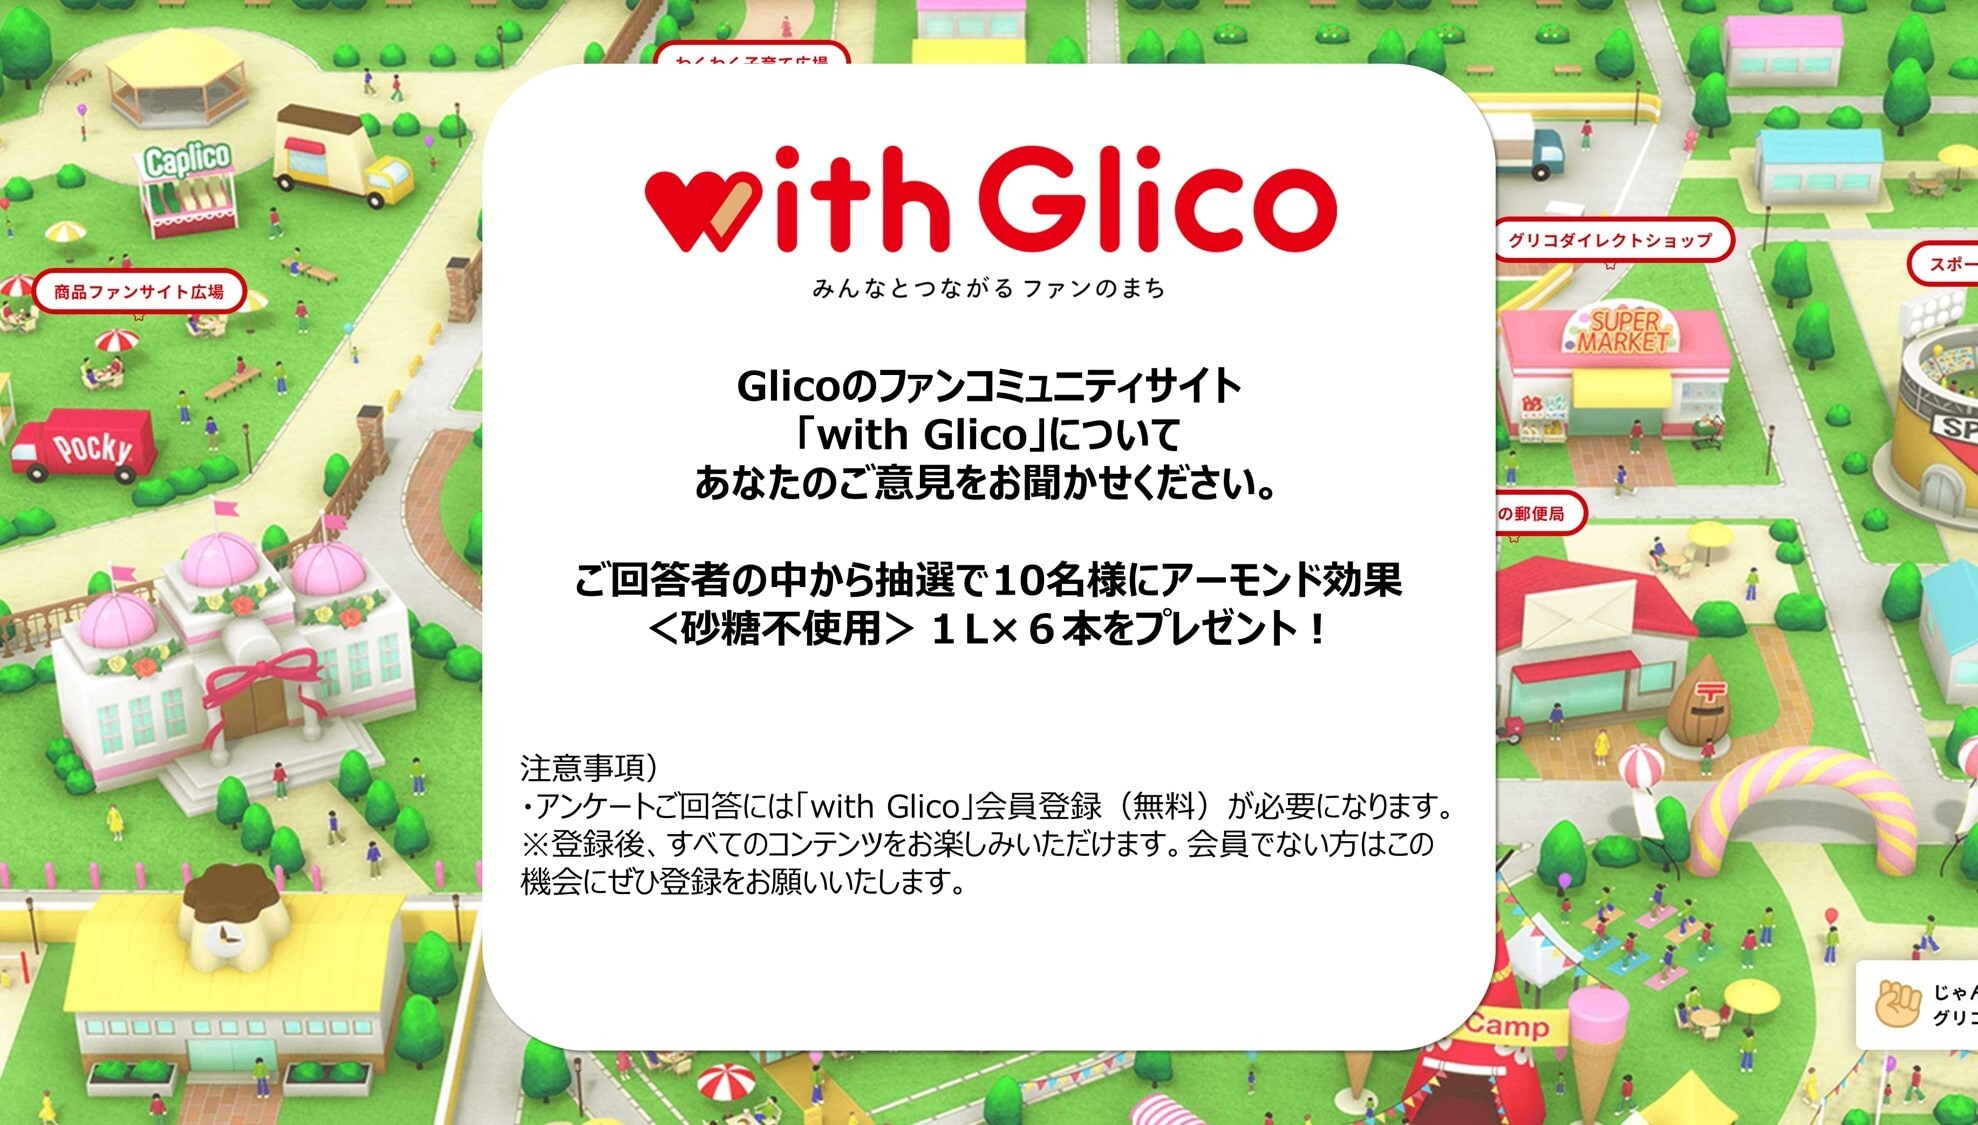 Glicoのファンコミュニティサイト「with Glico」についてあなたのご意見をお聞かせください。ご回答者の中から抽選で10名様にアーモンド効果＜砂糖未使用＞1L×6本をプレゼント！ 注意事項）・アンケートご回答には「with Glico」会員登録（無料）が必要になります。※登録後、すべてのコンテンツをお楽しみいただけます。会員でない方はこの機会にぜひご登録をお願いいたします。